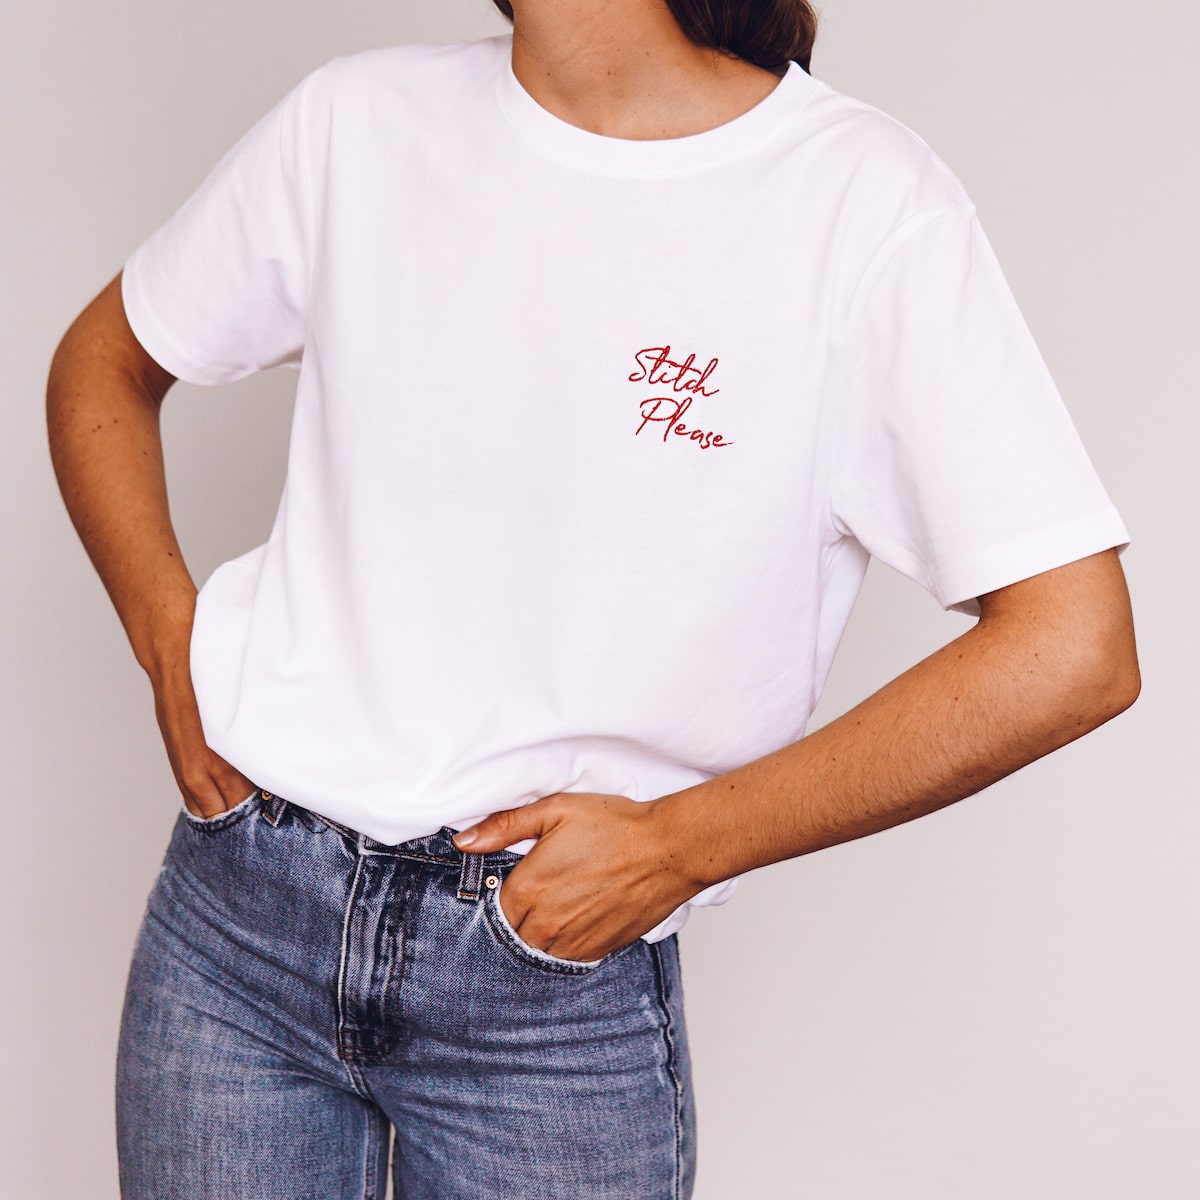 Stitch Please T-shirt - Lauren Aston Designs